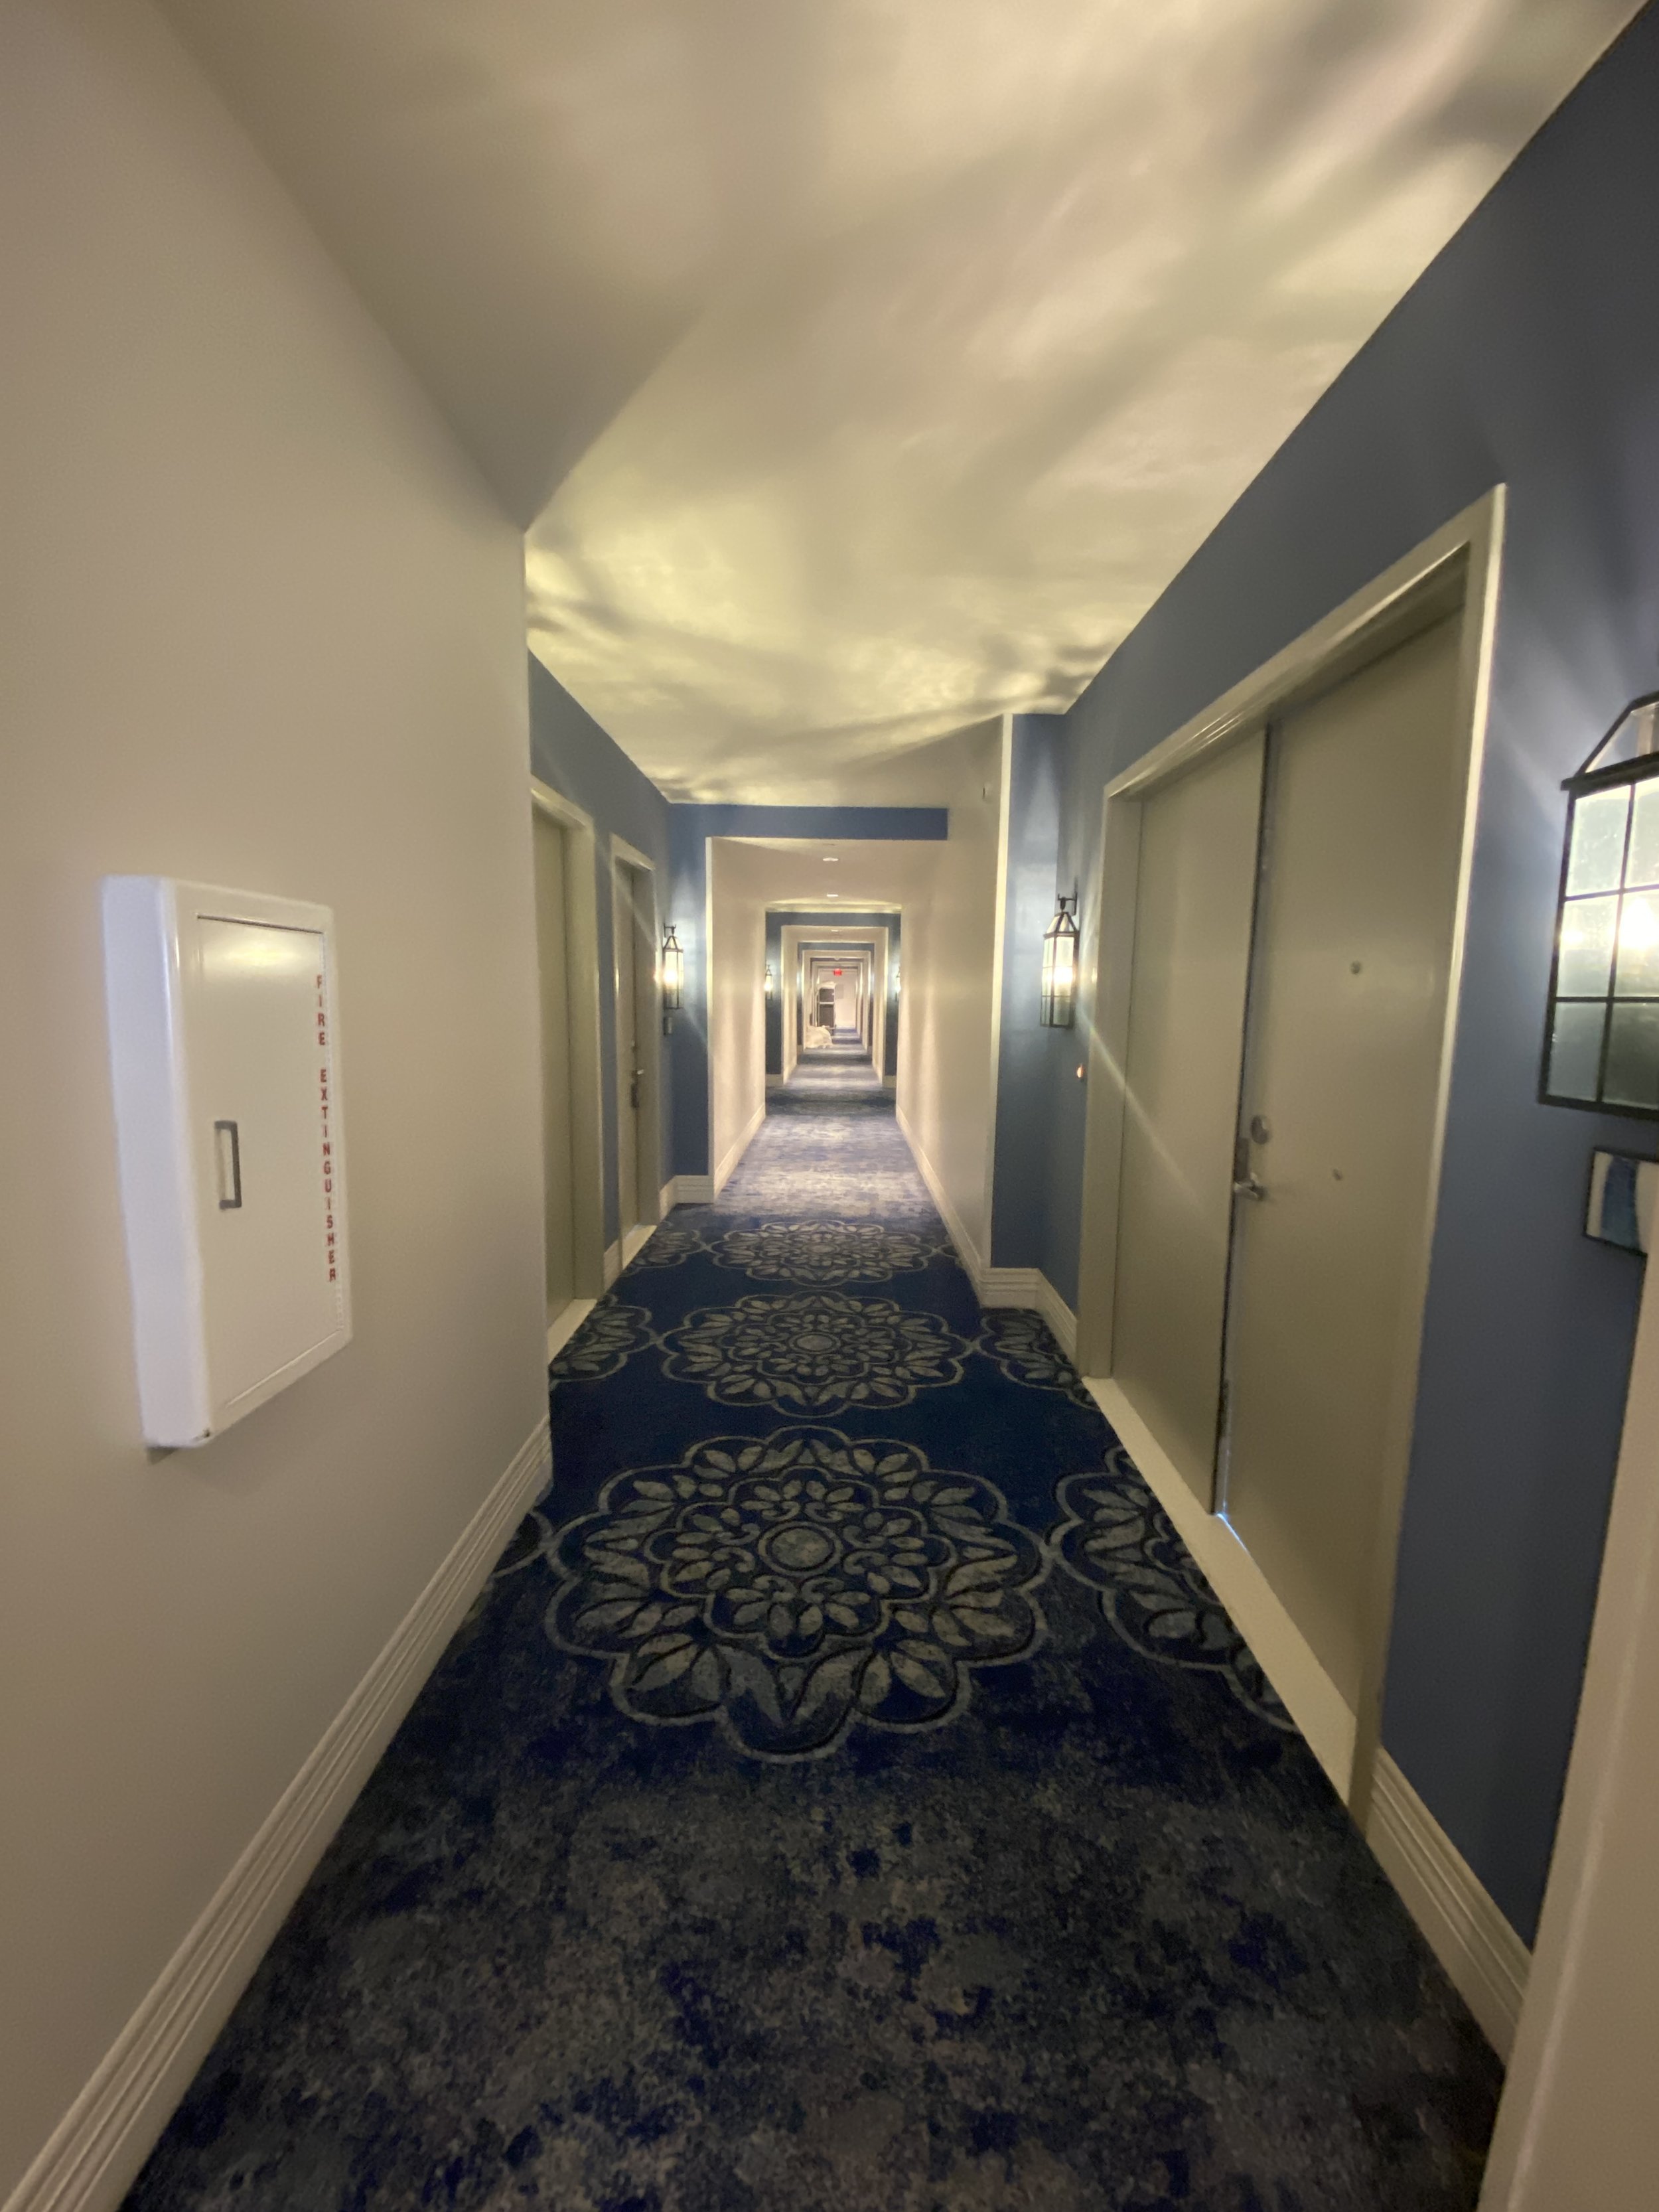  Rooms are accessed via interior hallways. 